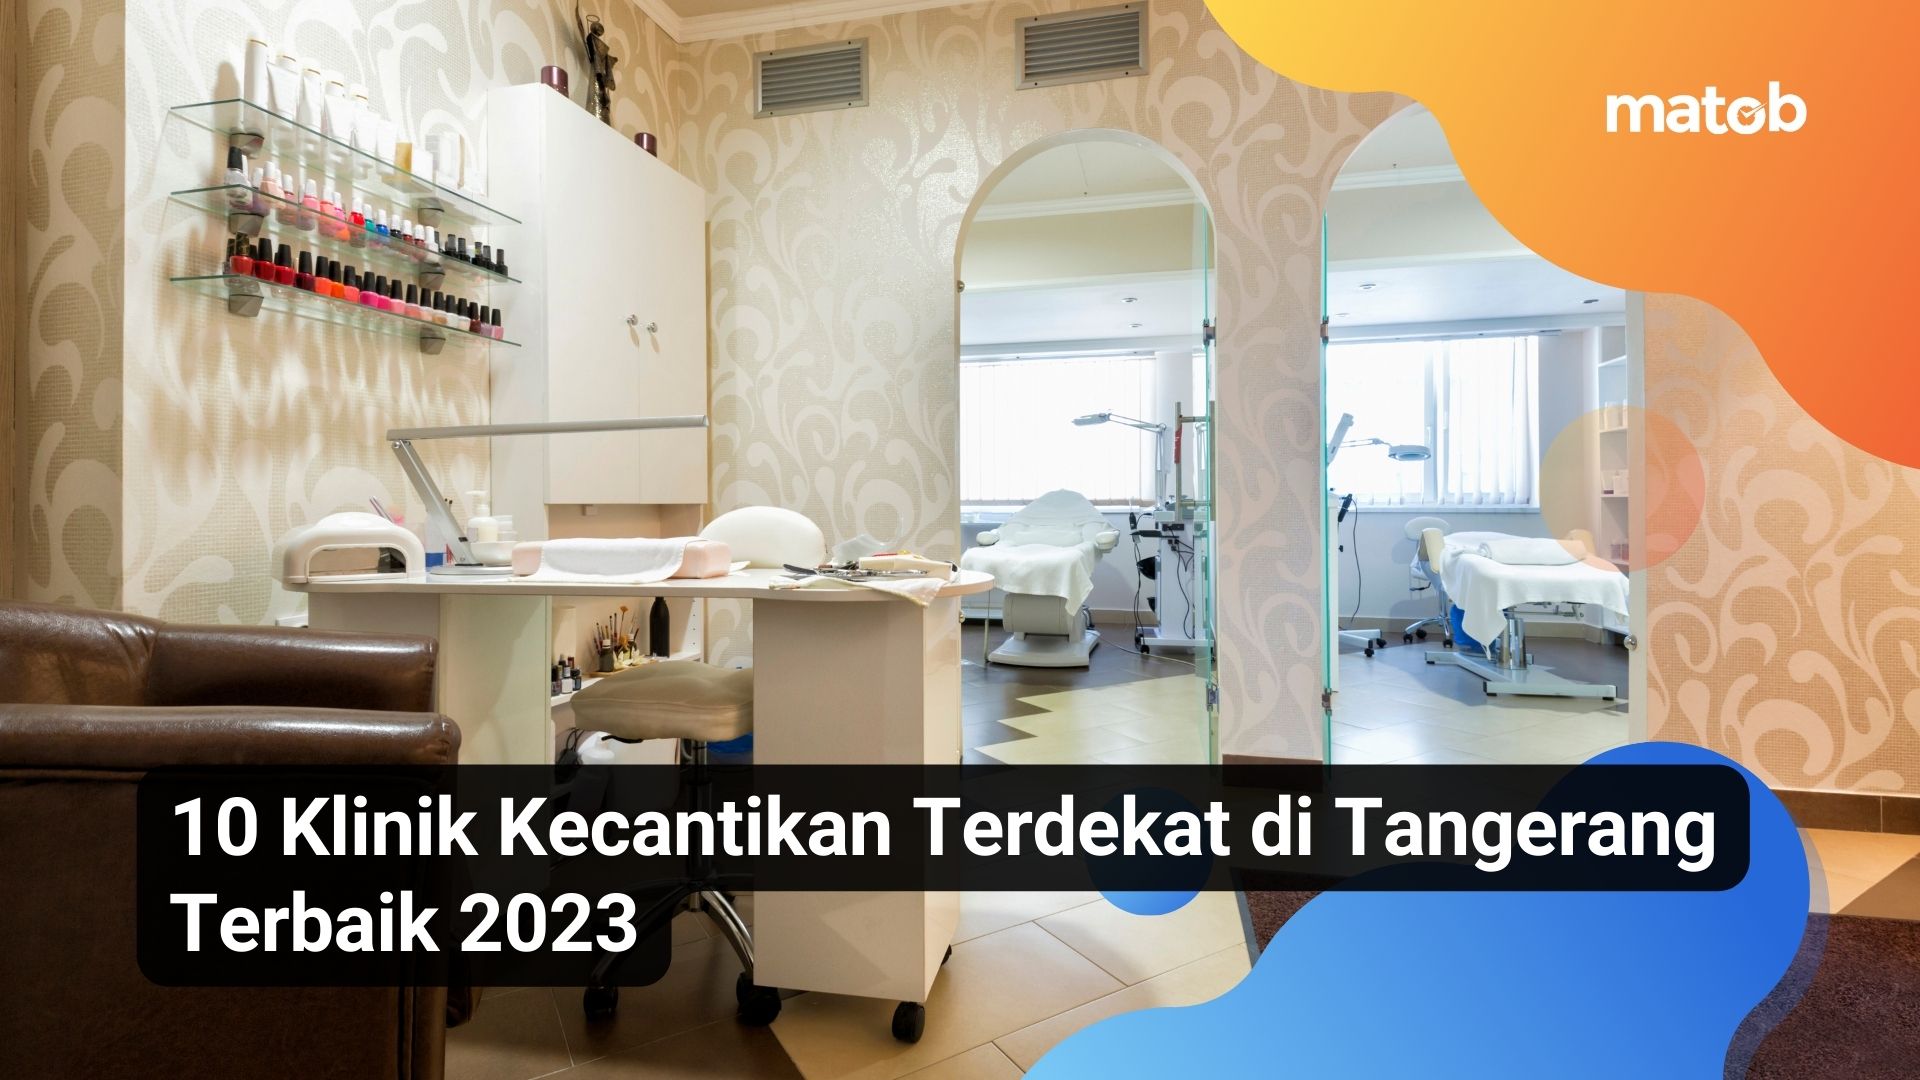 10 Klinik Kecantikan Terdekat di Tangerang Terbaik 2023